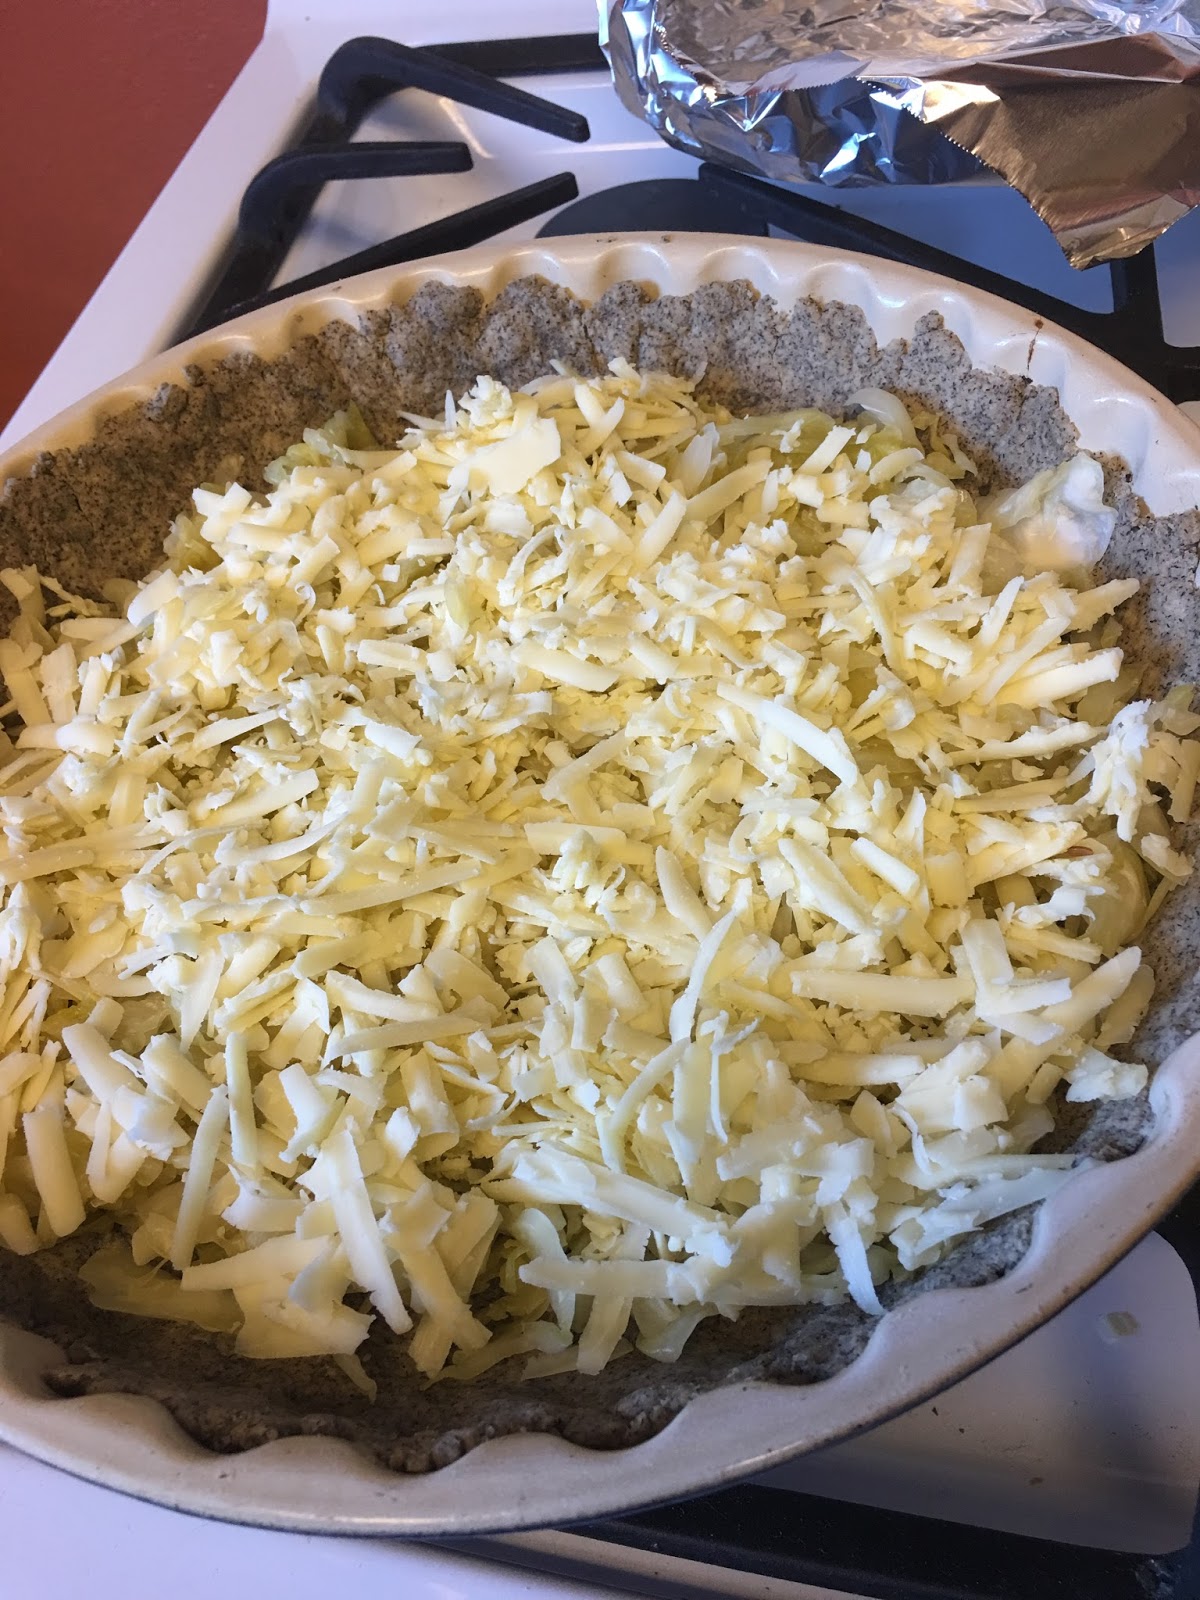 Slovenian Roots Quest: Sauerkraut Quiche with Buckwheat Crust